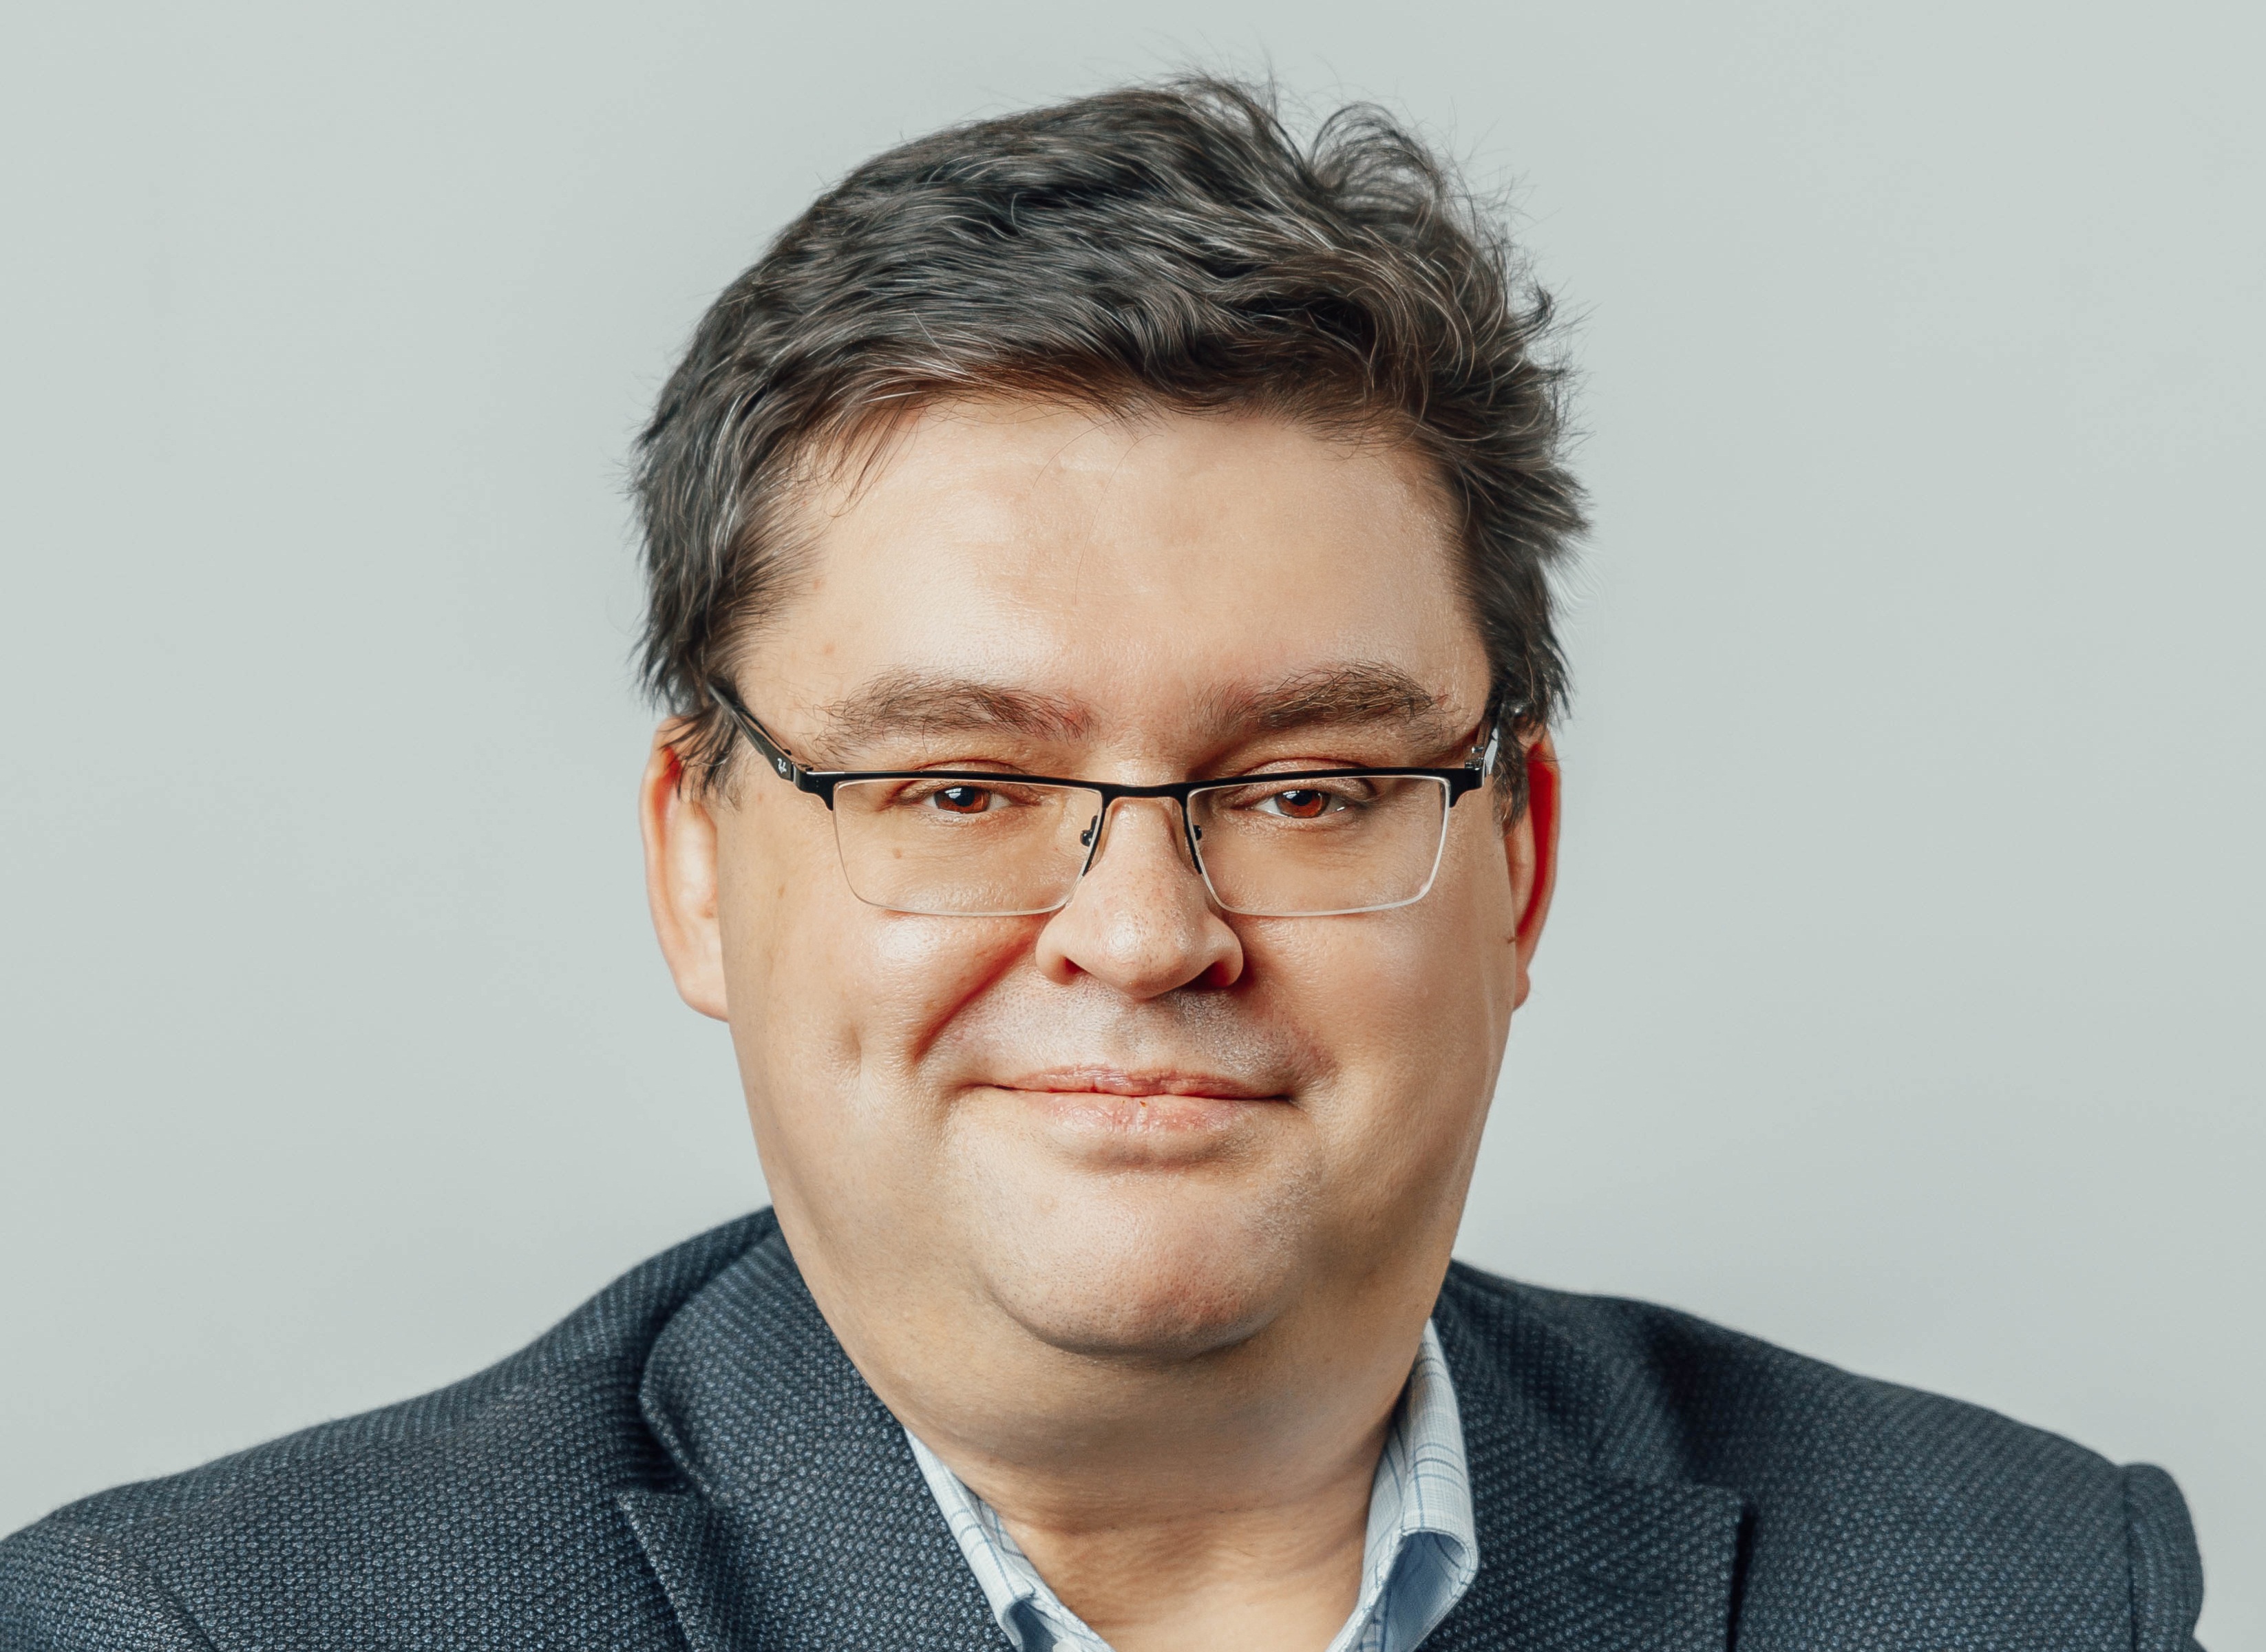 Михаил Жуков, CEO HeadHunter: «Удаленный формат работы оправдал себя»